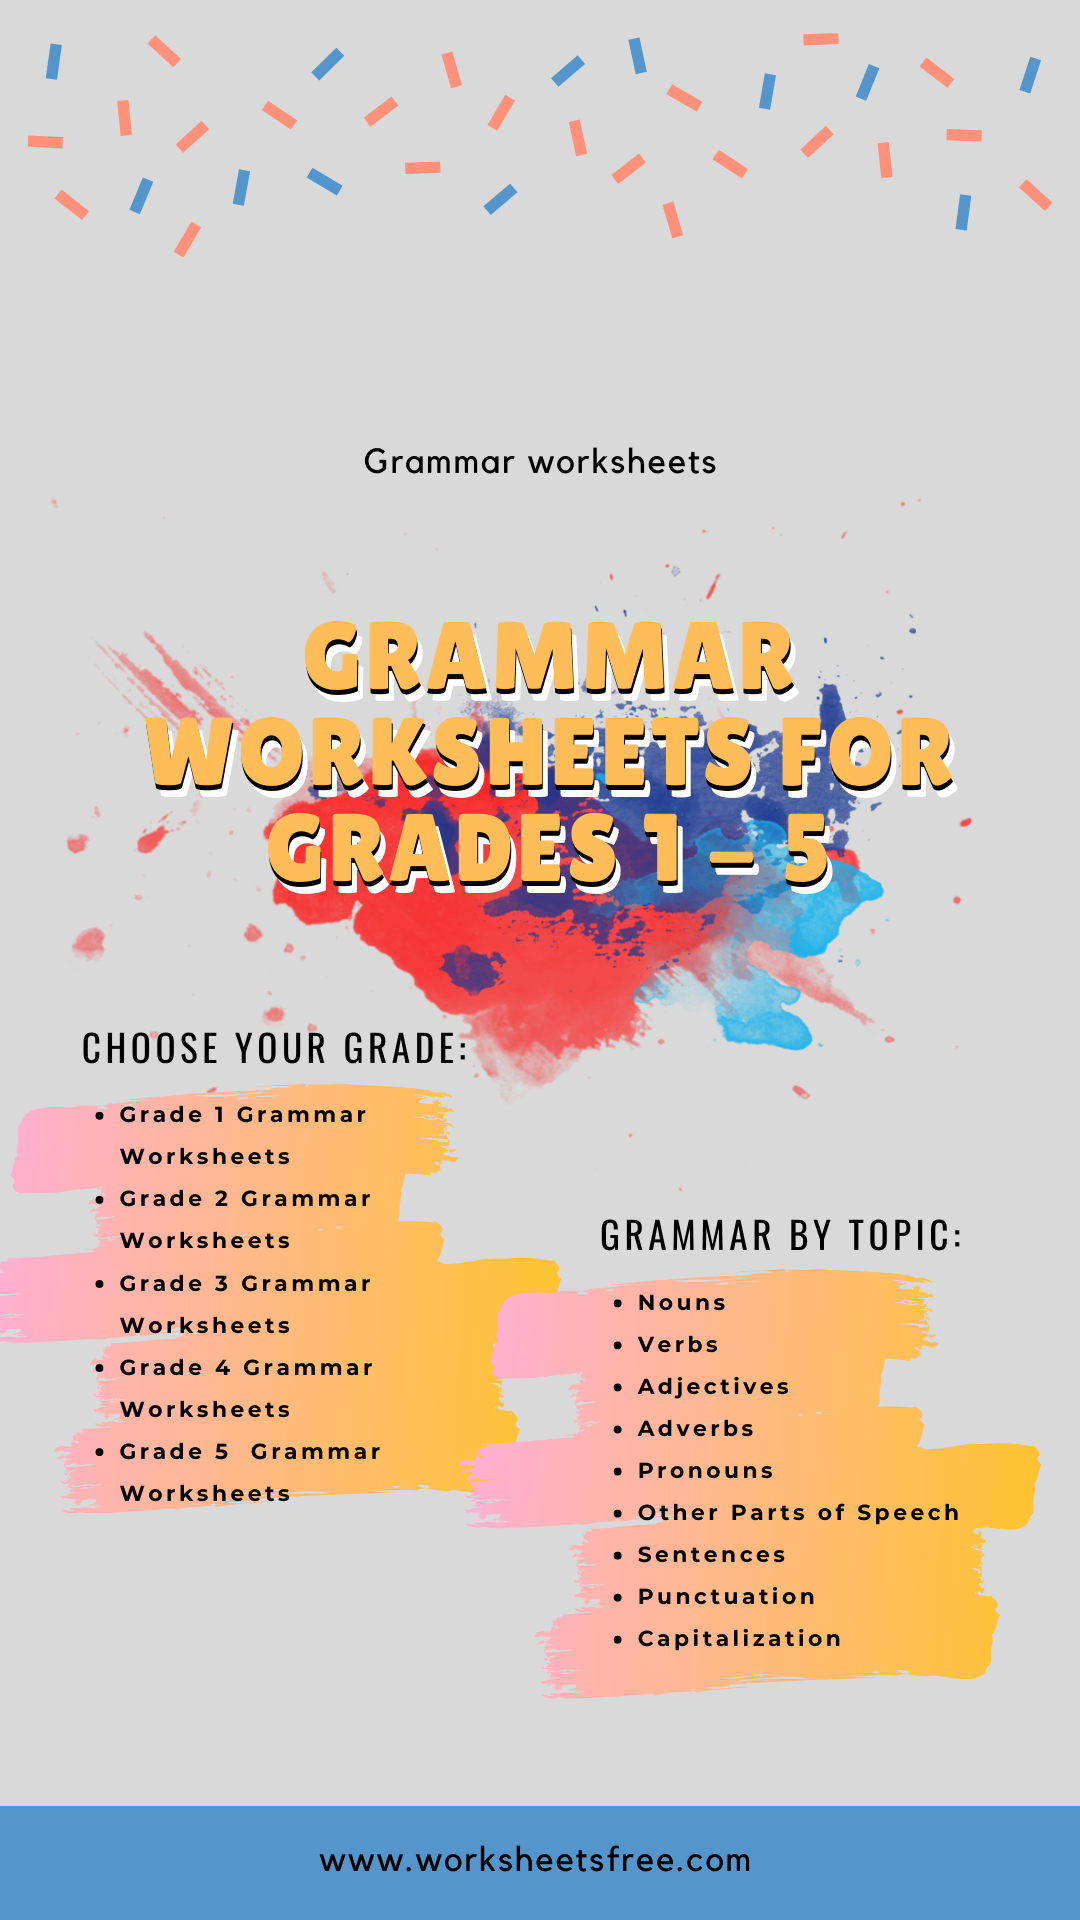 grammar-worksheets-for-grades-1-5-worksheets-free